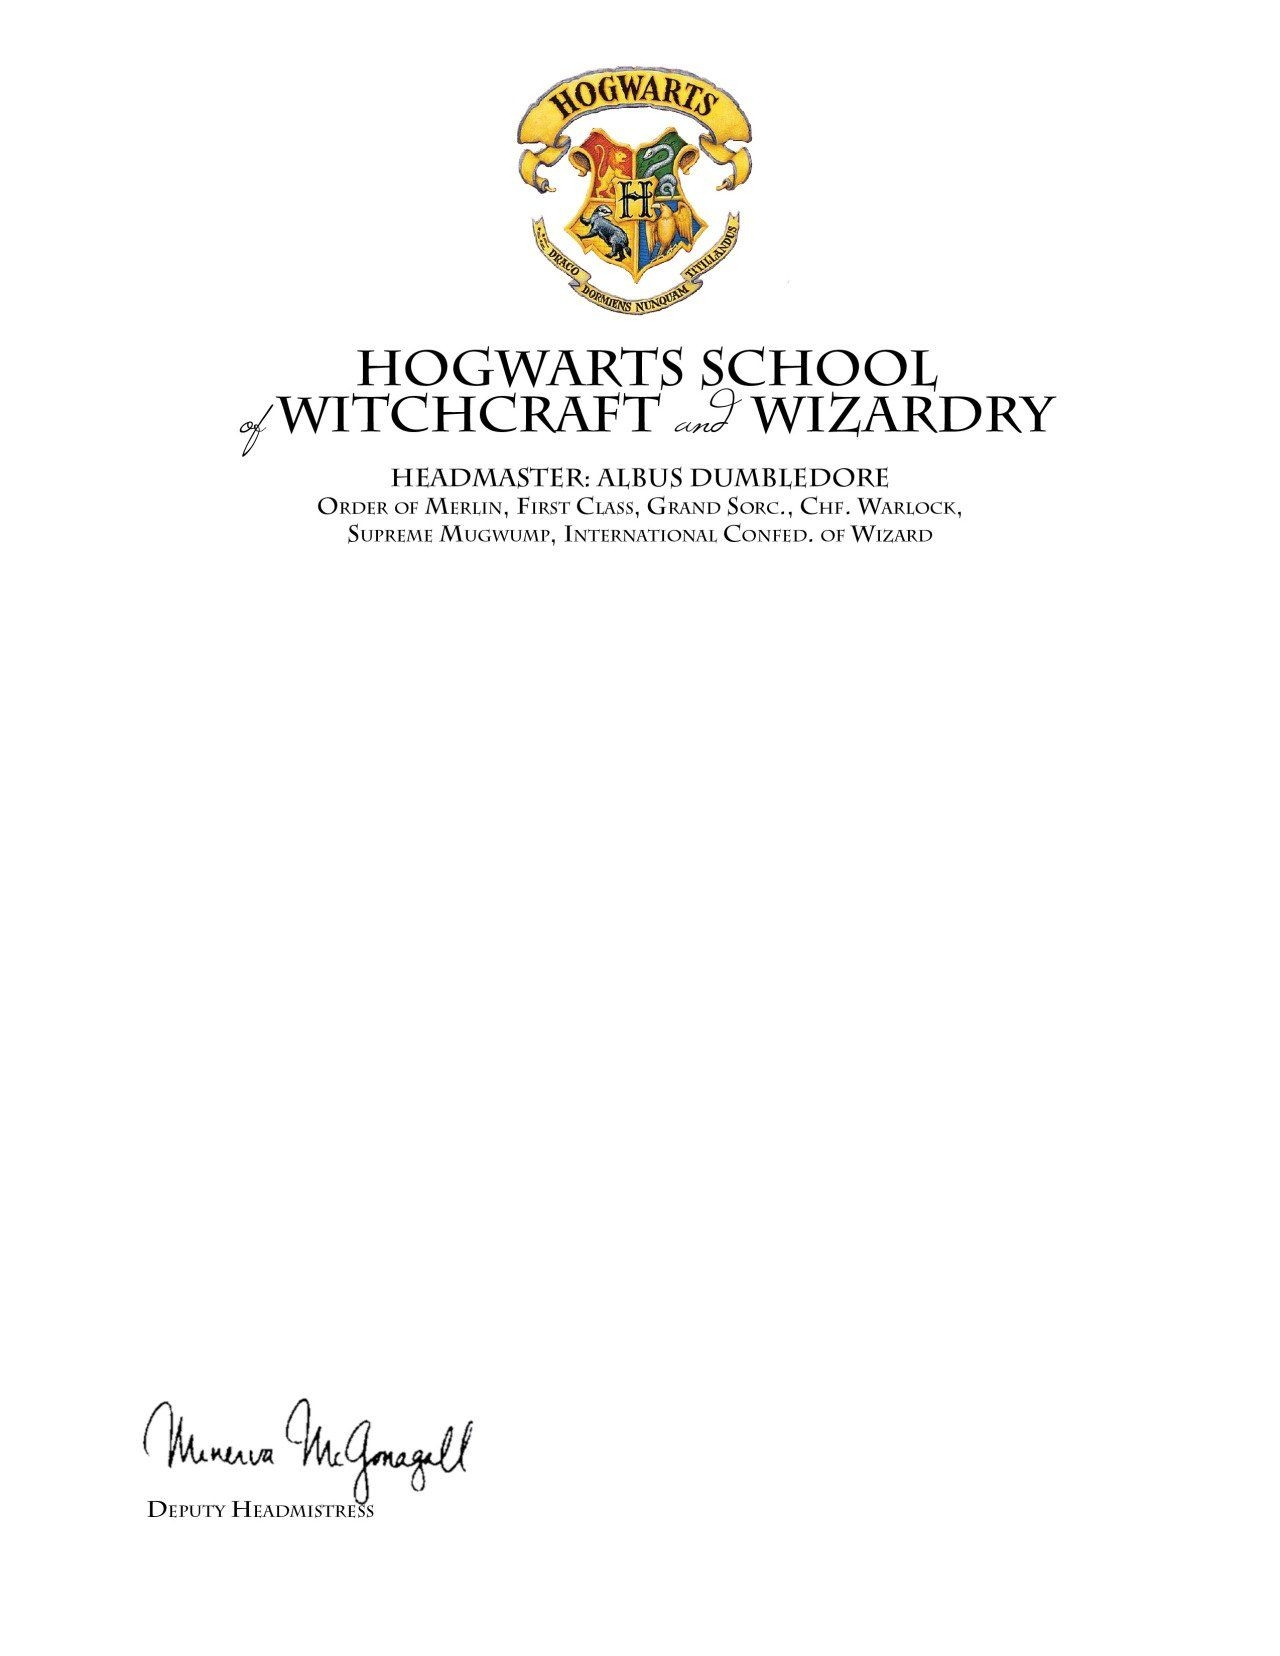 Harry Potter Acceptance Letter Envelope Template Regarding Harry Potter Acceptance Letter Template